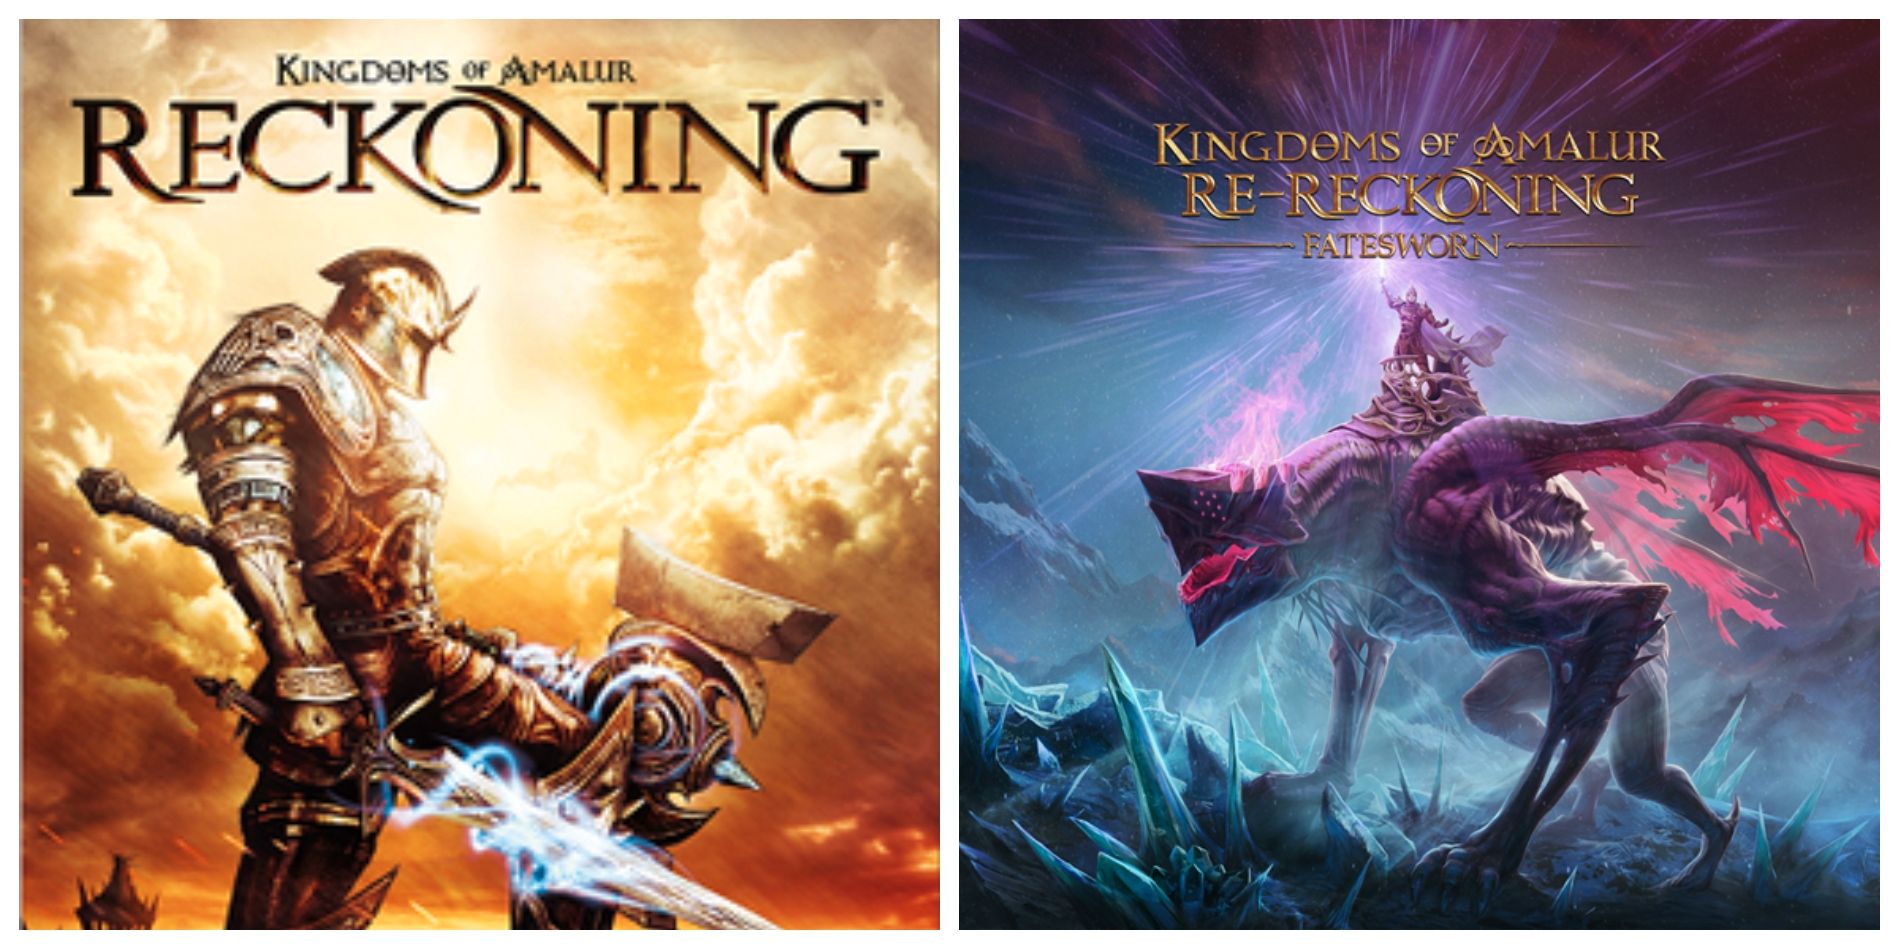 Kingdoms Of Amalur: Re-Reckoning's Fatesworn DLC podría insinuar una secuela